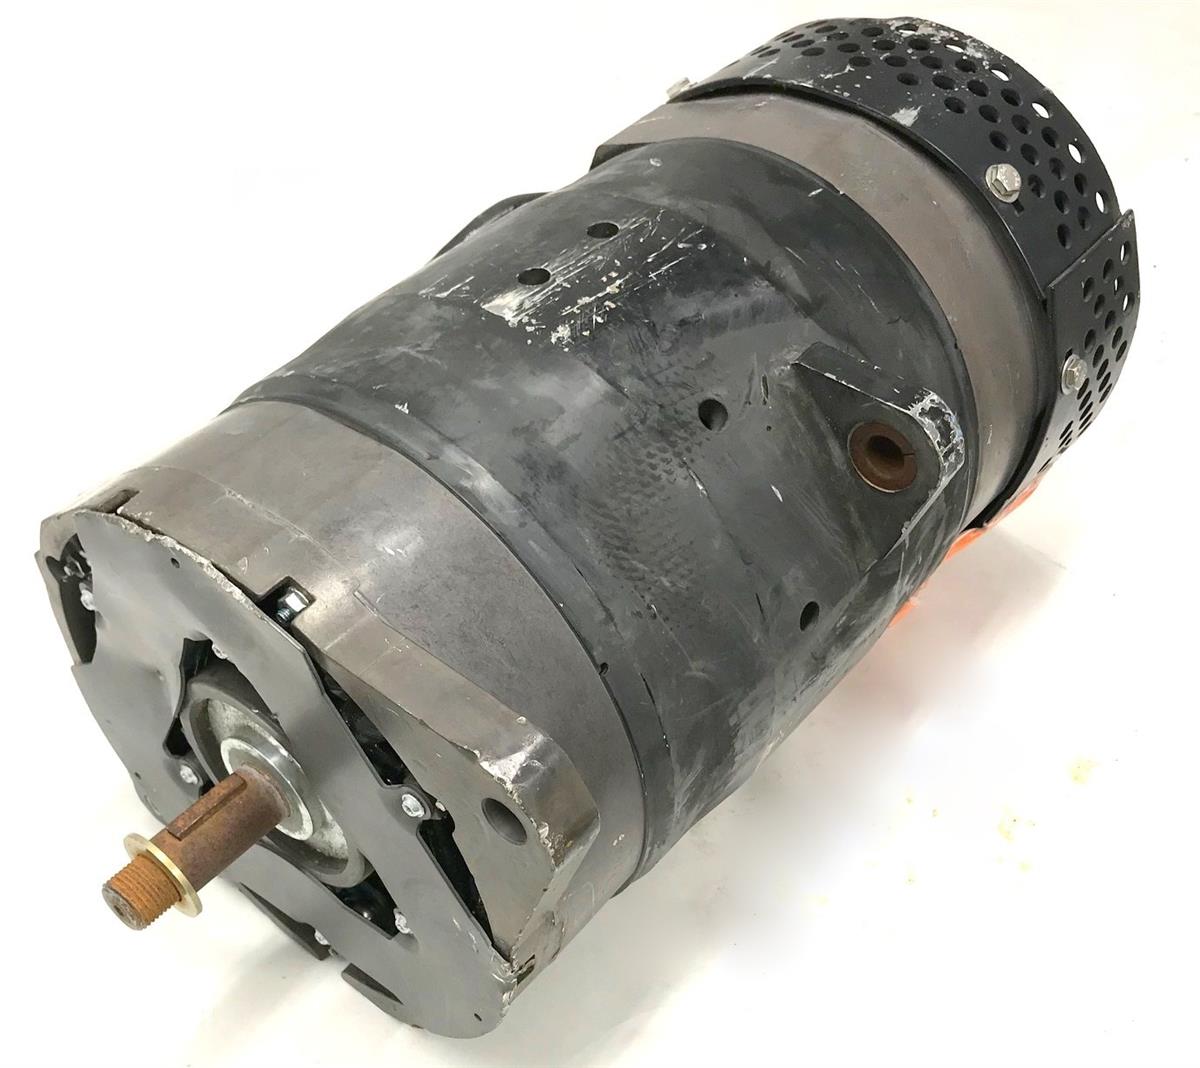 SP-2109 | SP-2109 Generator 28 volt 400 amp (4).jpg